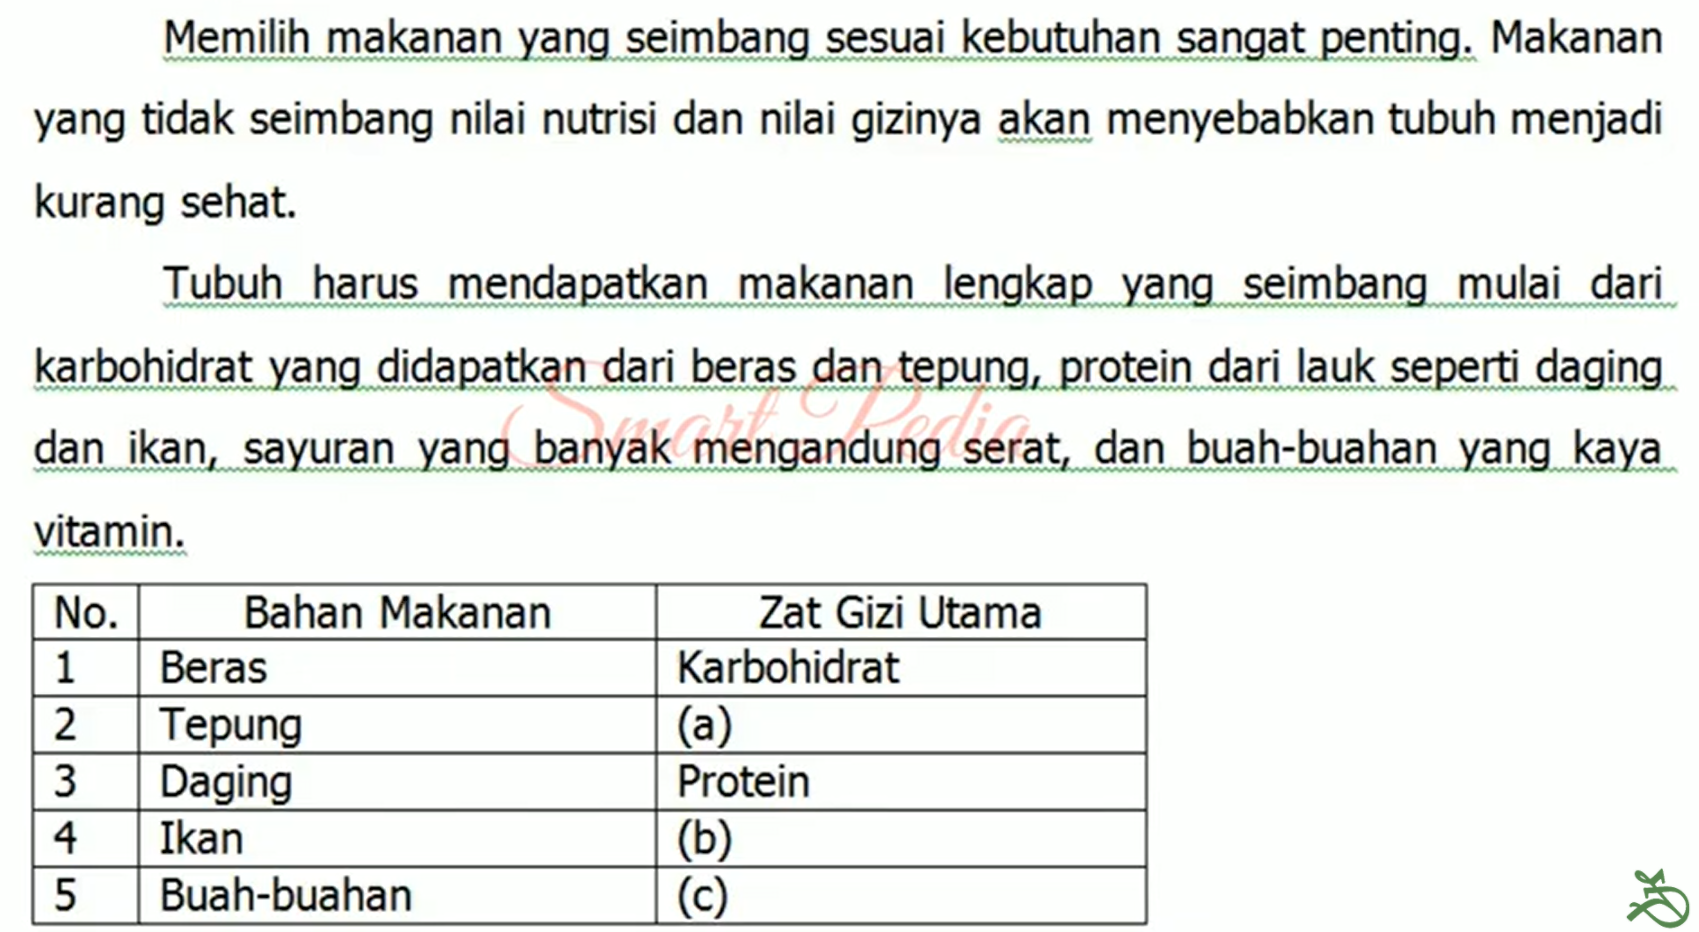 Contoh Soal Ujian Sekolah Bahasa Indonesia Kelas 6 SD K13 Dilengkapi Kunci Jawaban Terbaru 2021